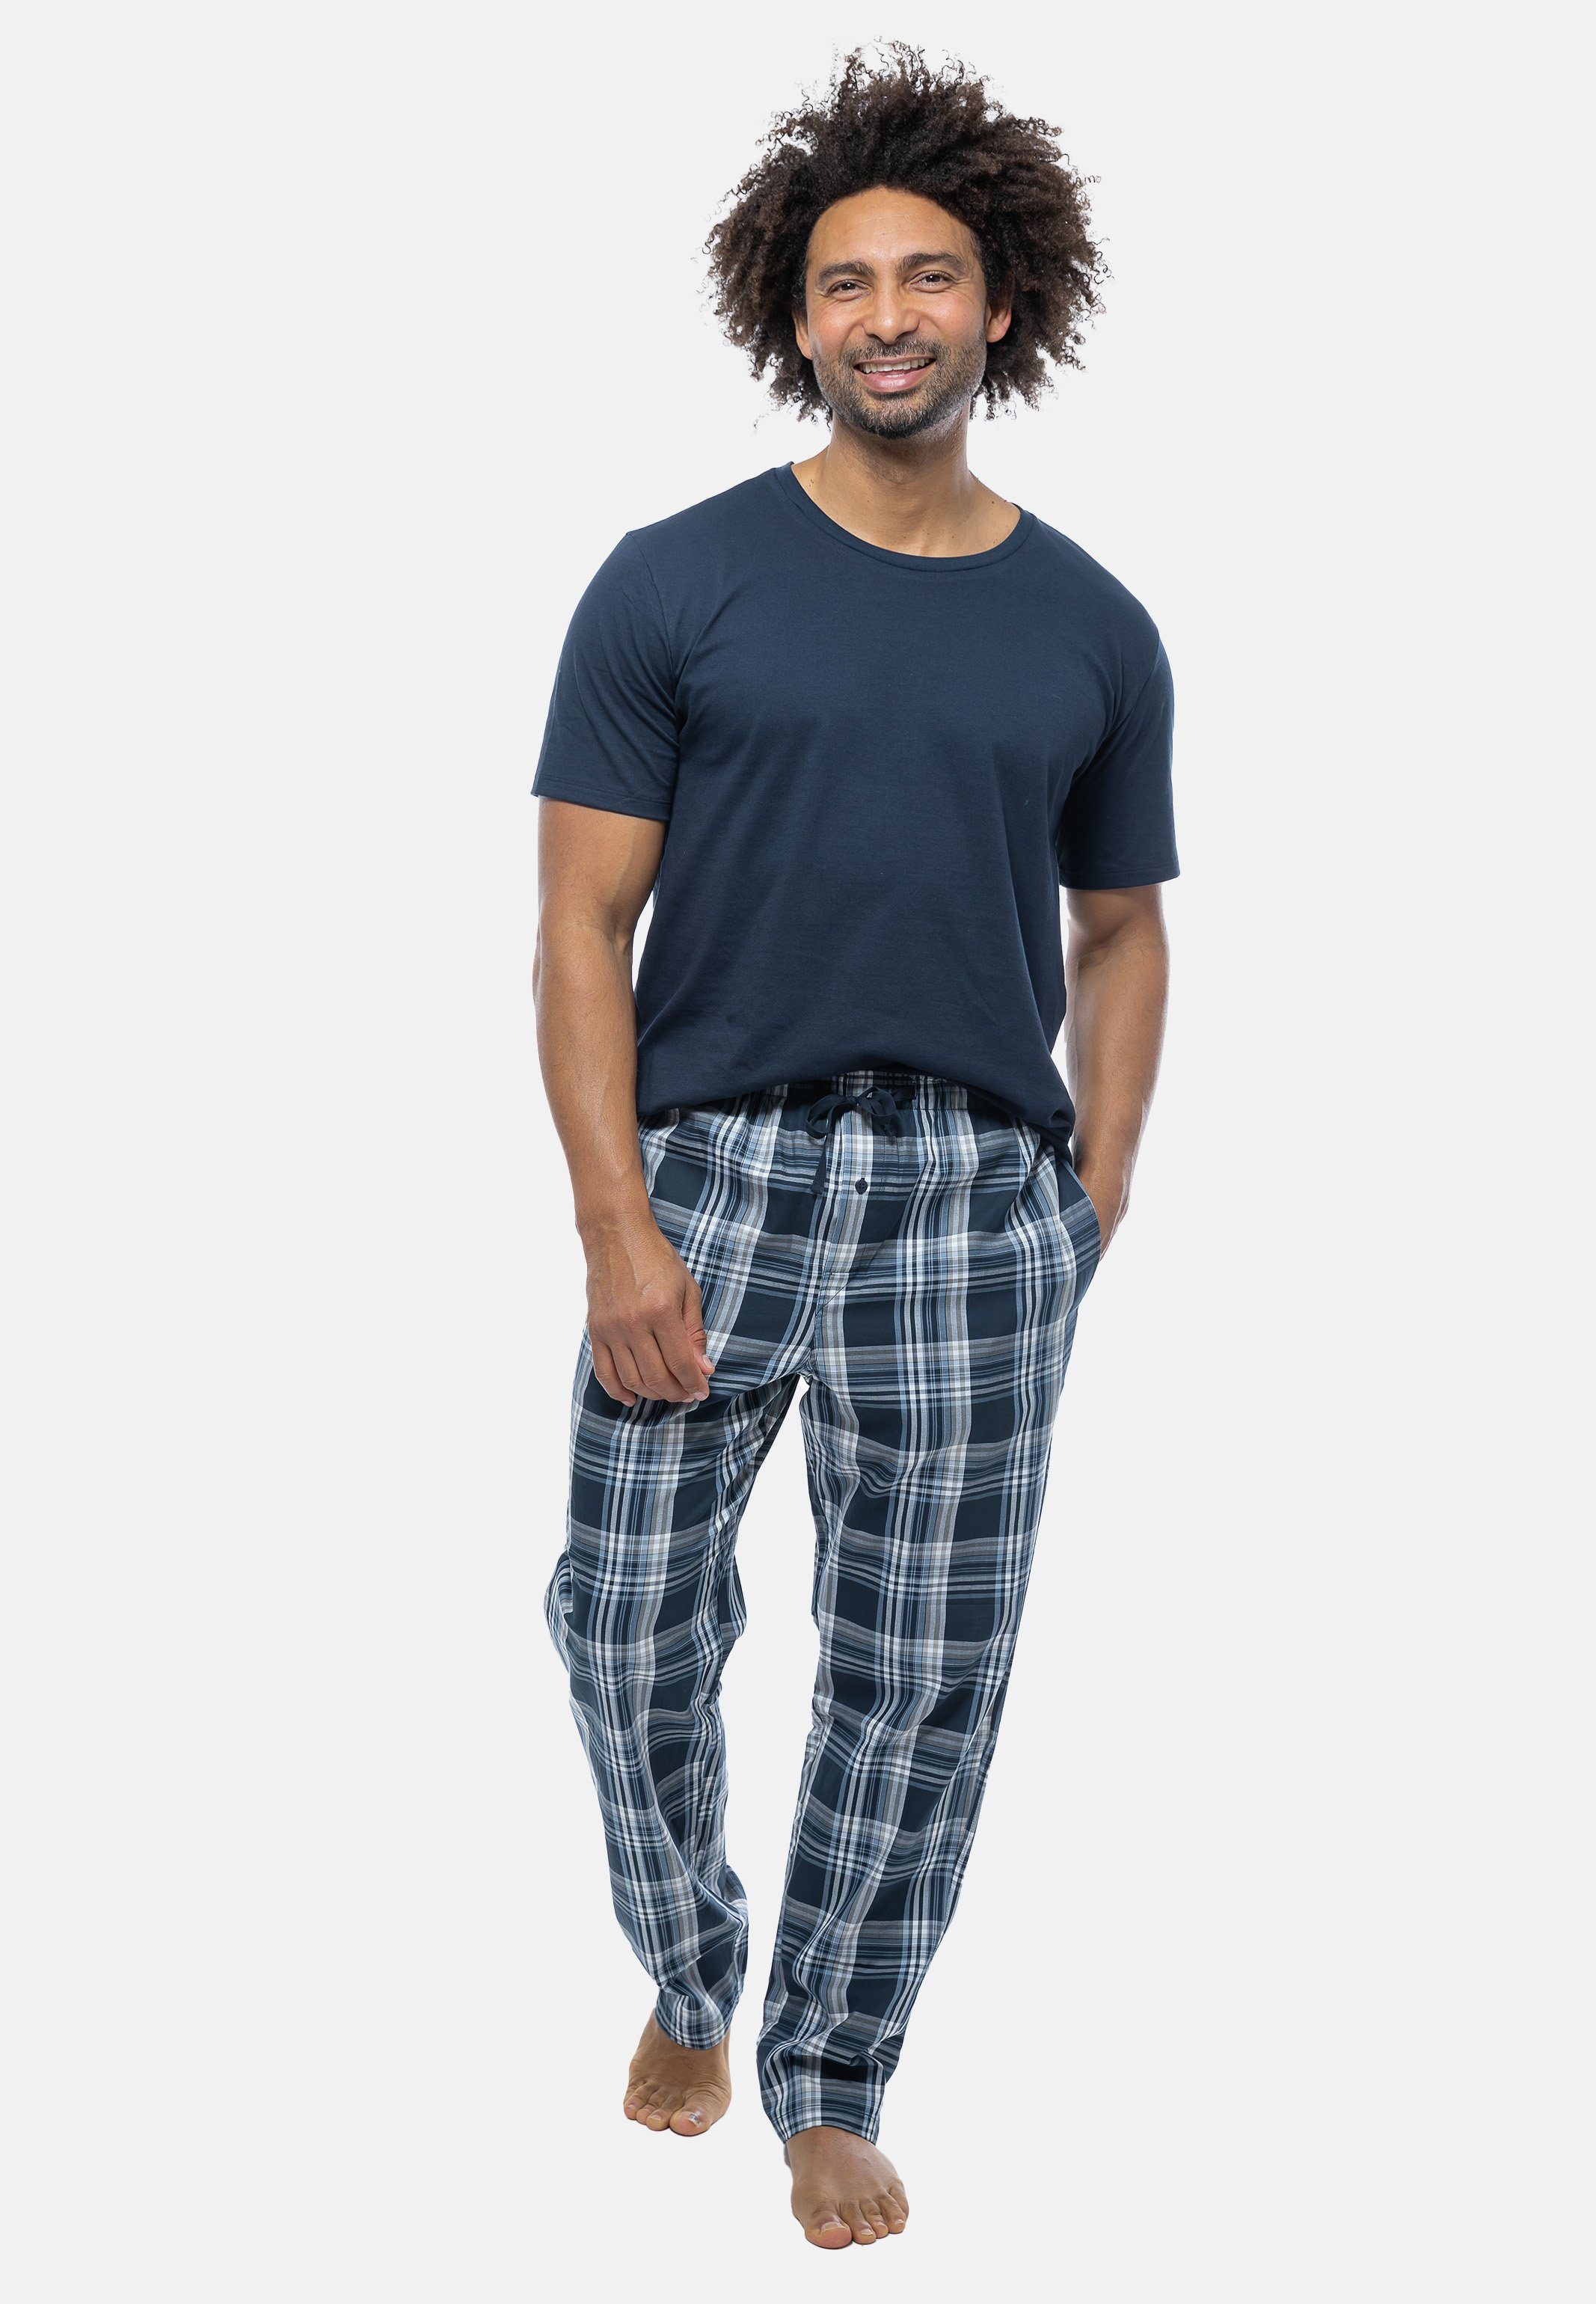 Baumwolle Mix Kurzarm-Shirt Schiesser Pyjama - 2 tlg) - Dunkelblau (Set, Schlafanzug mit Rundhals-Ausschnitt